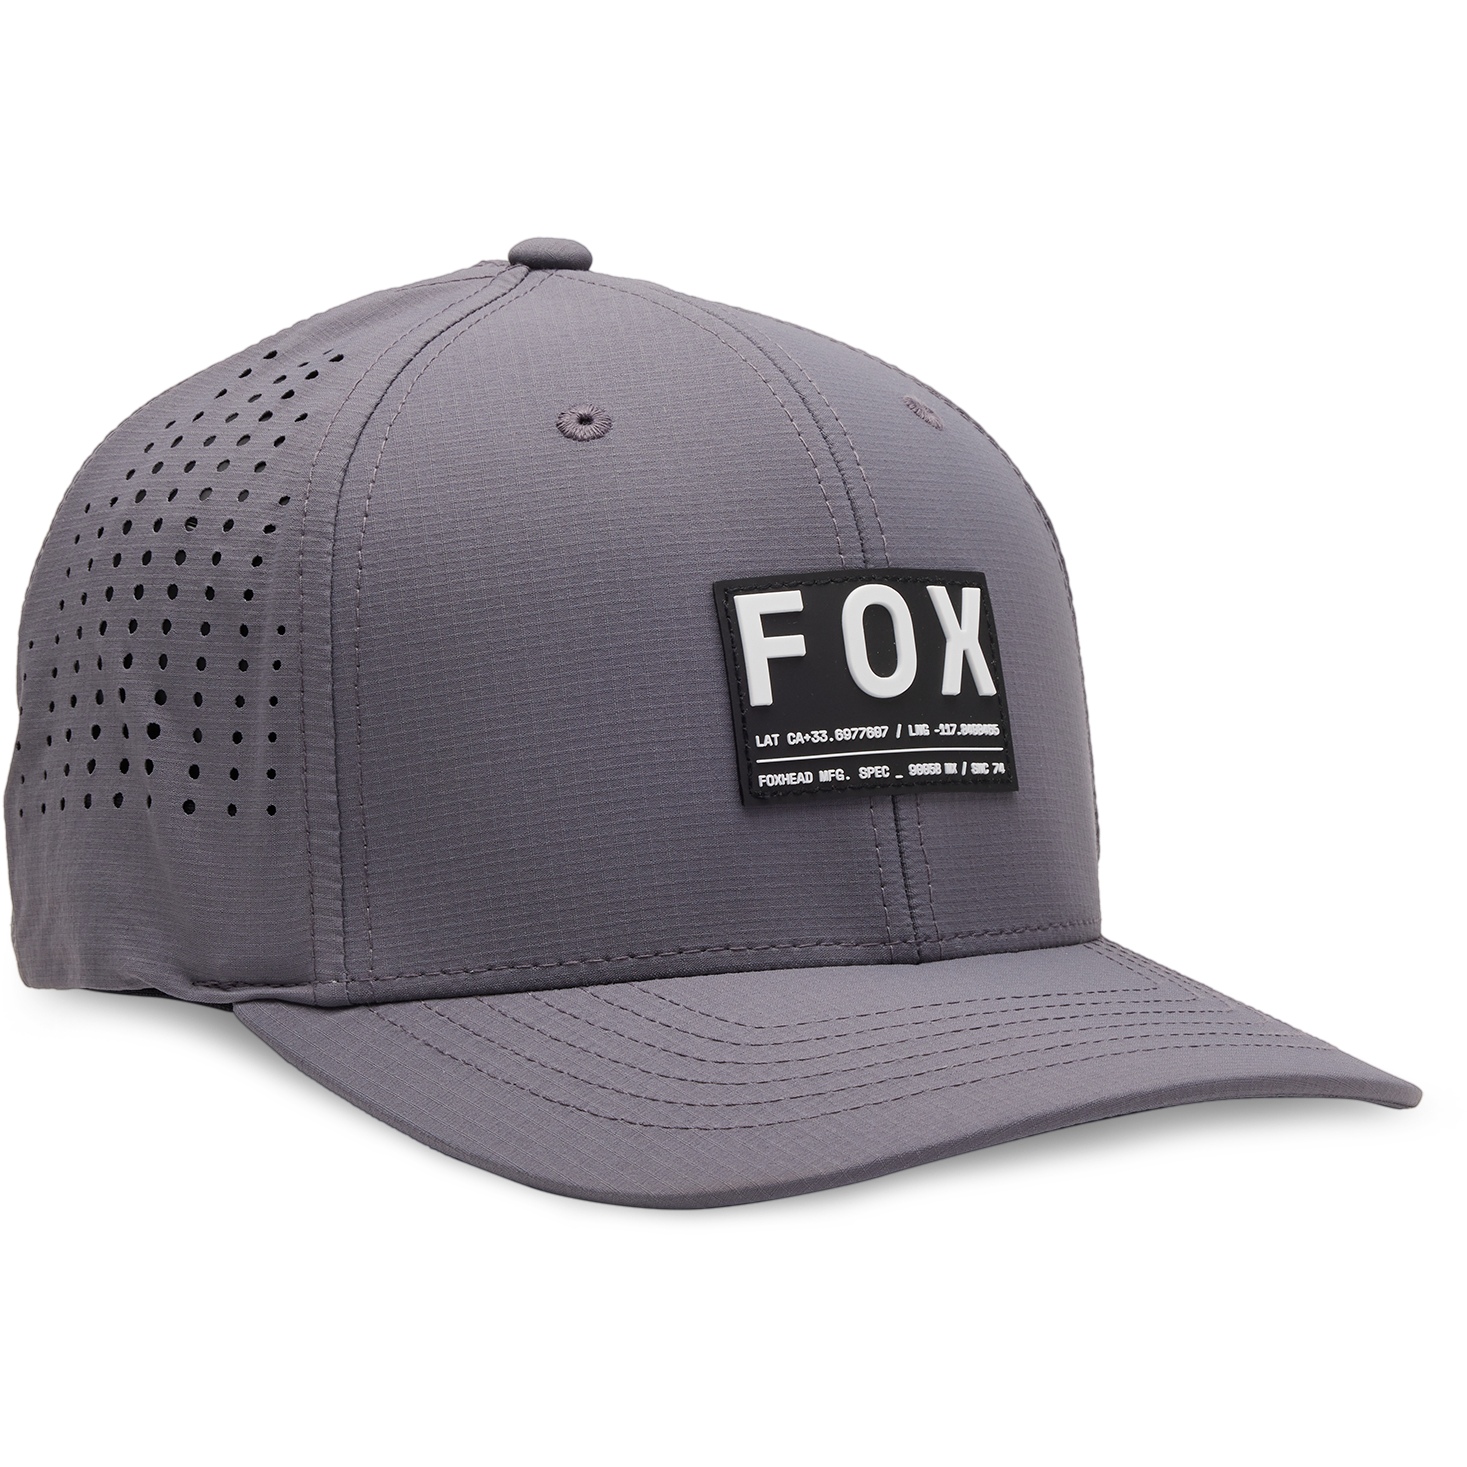 Productfoto van FOX Non Stop Tech Flexfit Pet - steel grey